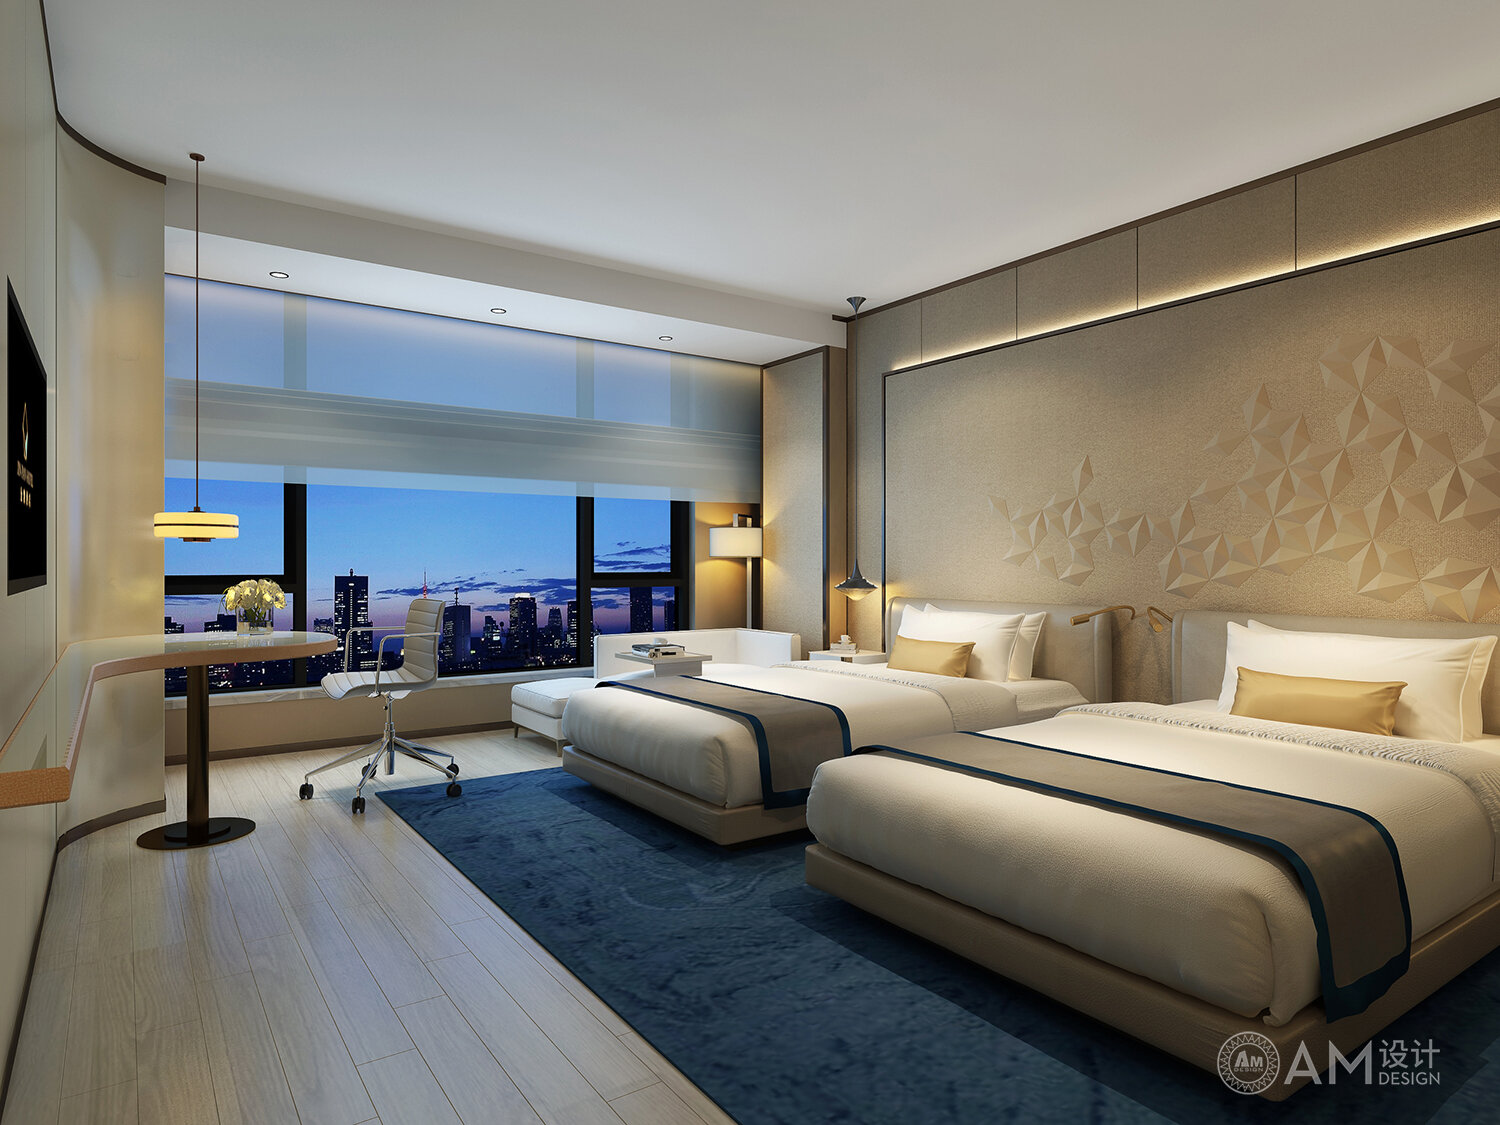 AM | Standard room design of Xi'an Jinpan Hotel